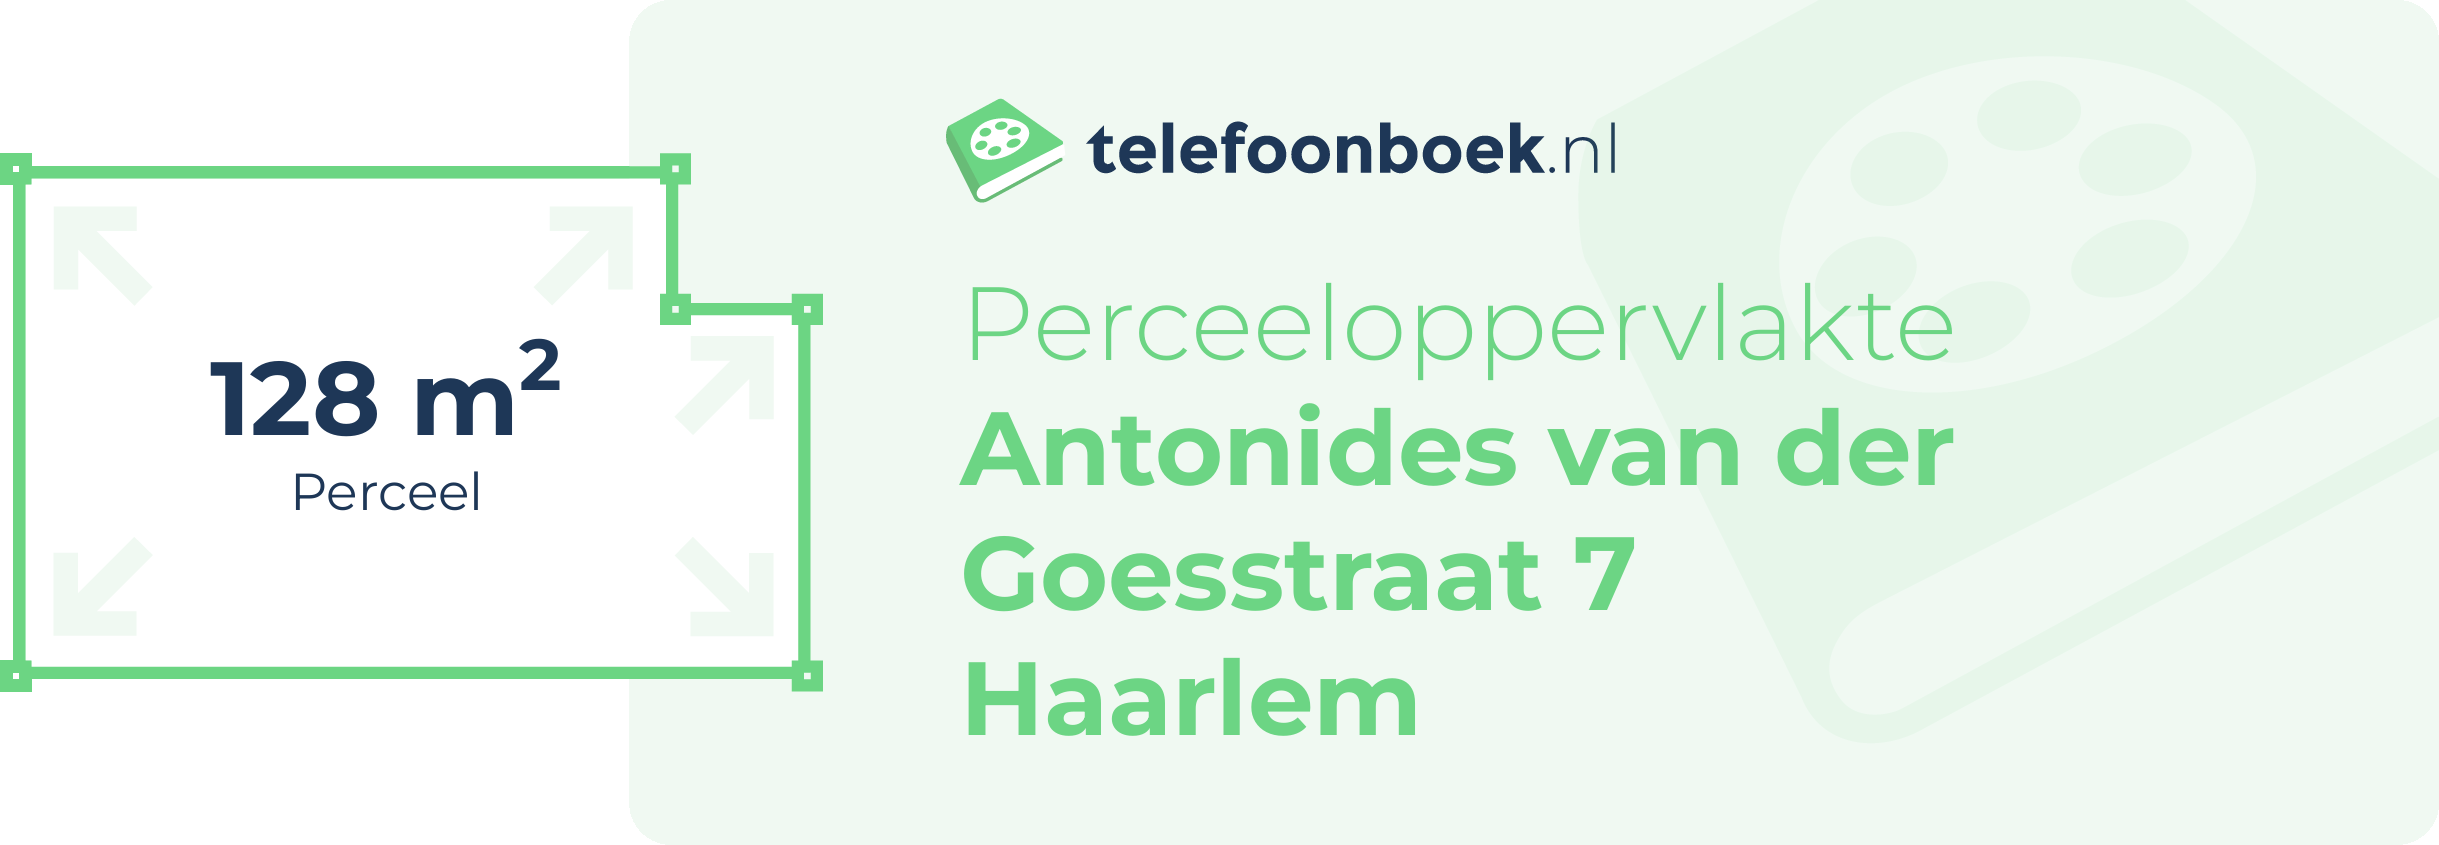 Perceeloppervlakte Antonides Van Der Goesstraat 7 Haarlem